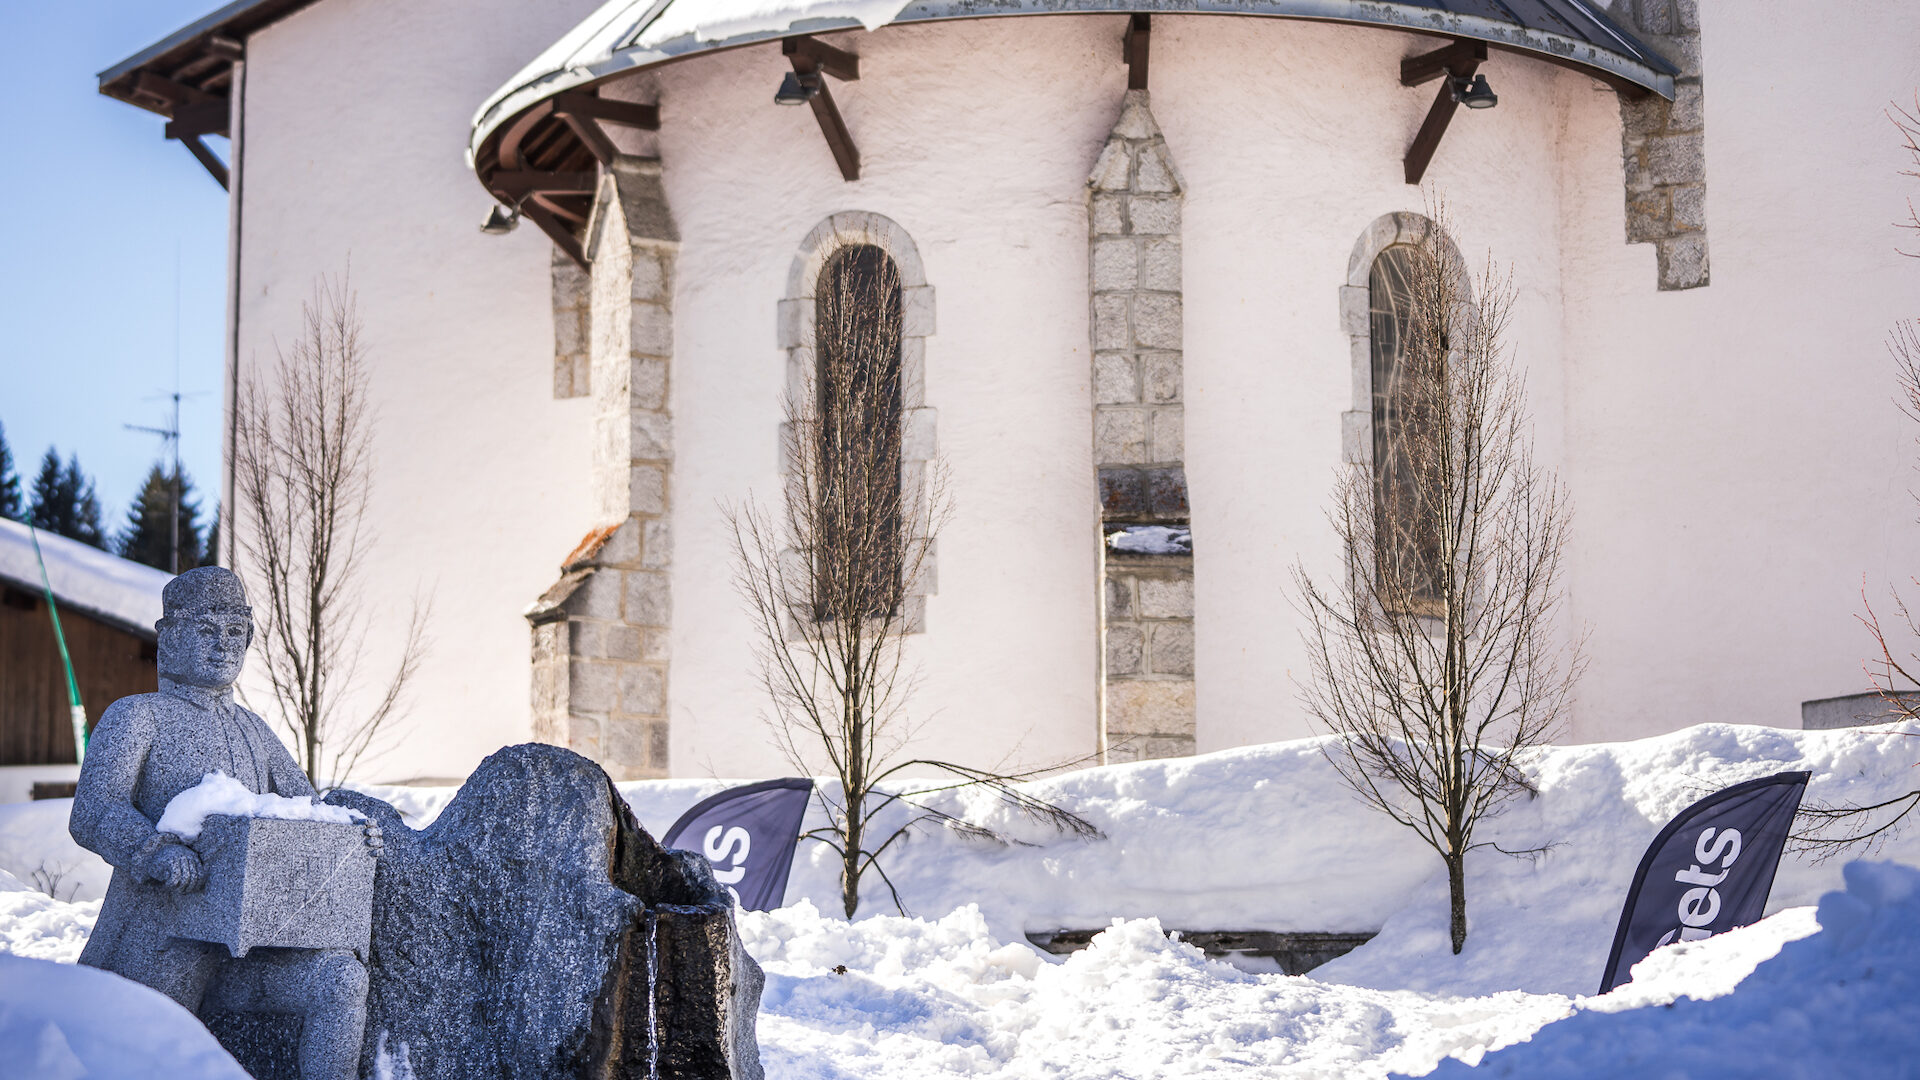 église en hiver avec statue musicien en premier plan